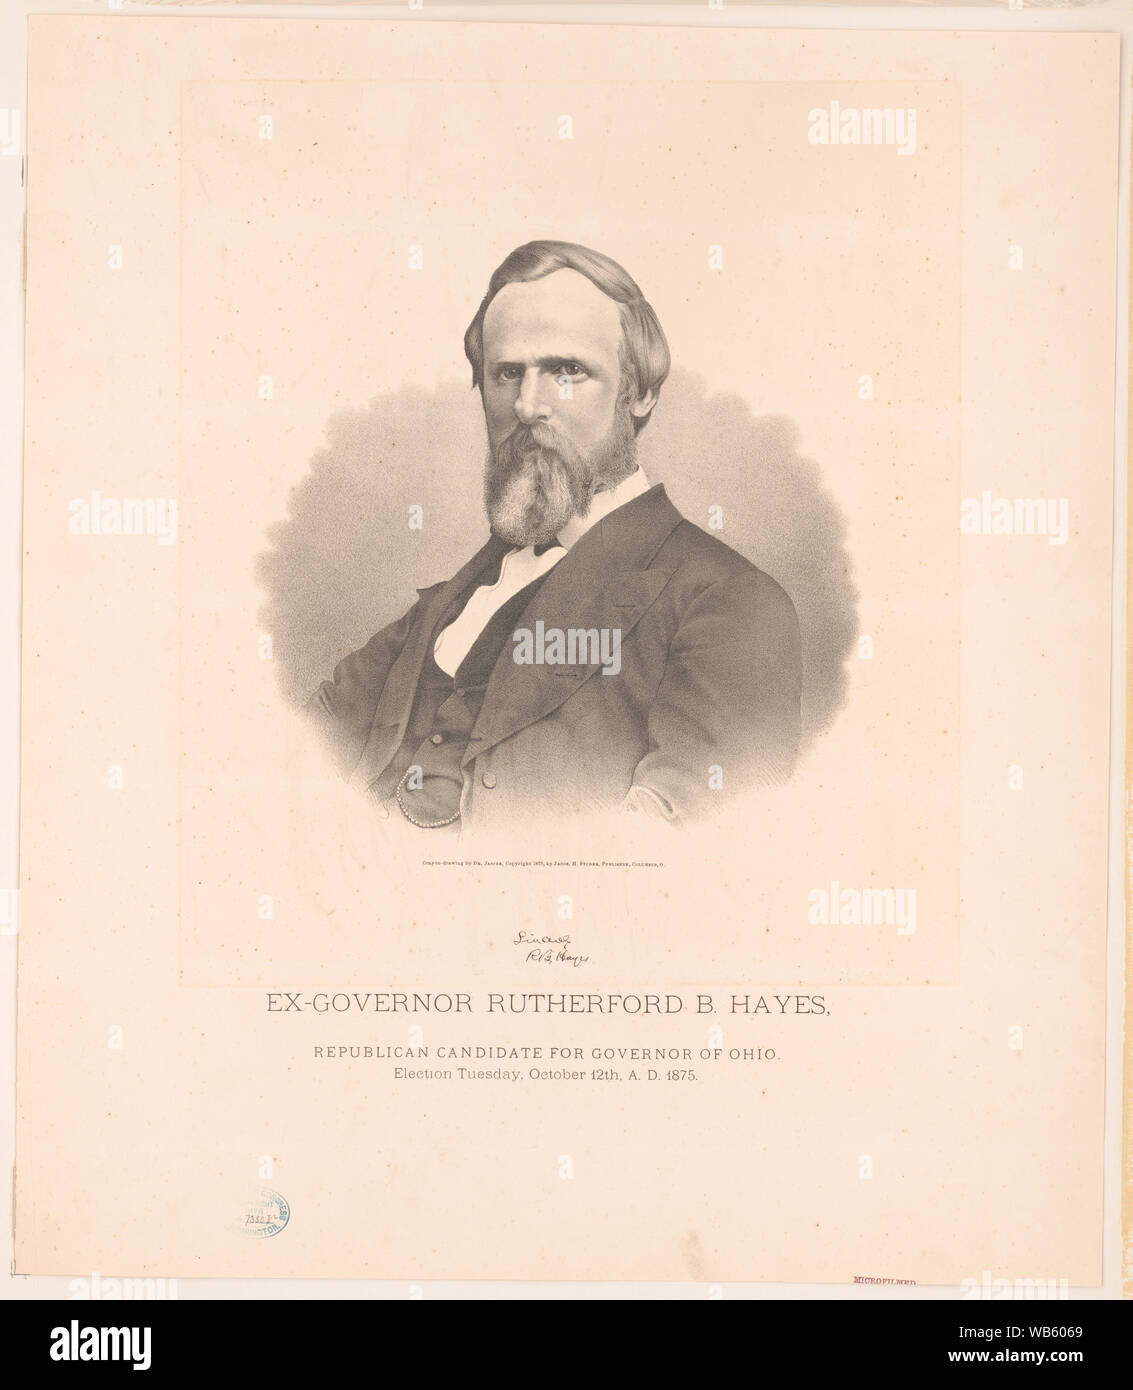 Ex-Governor Rutherford B. Hayes, der republikanische Kandidat für den Gouverneur von Ohio. Wahl Dienstag, Oktober 12th, 1875 N.CHR./Kreide - Zeichnung von Dr. Jasper. Abstract / Medium: 1 drucken: Lithographie, 53,3 x 46,3 cm Stockfoto